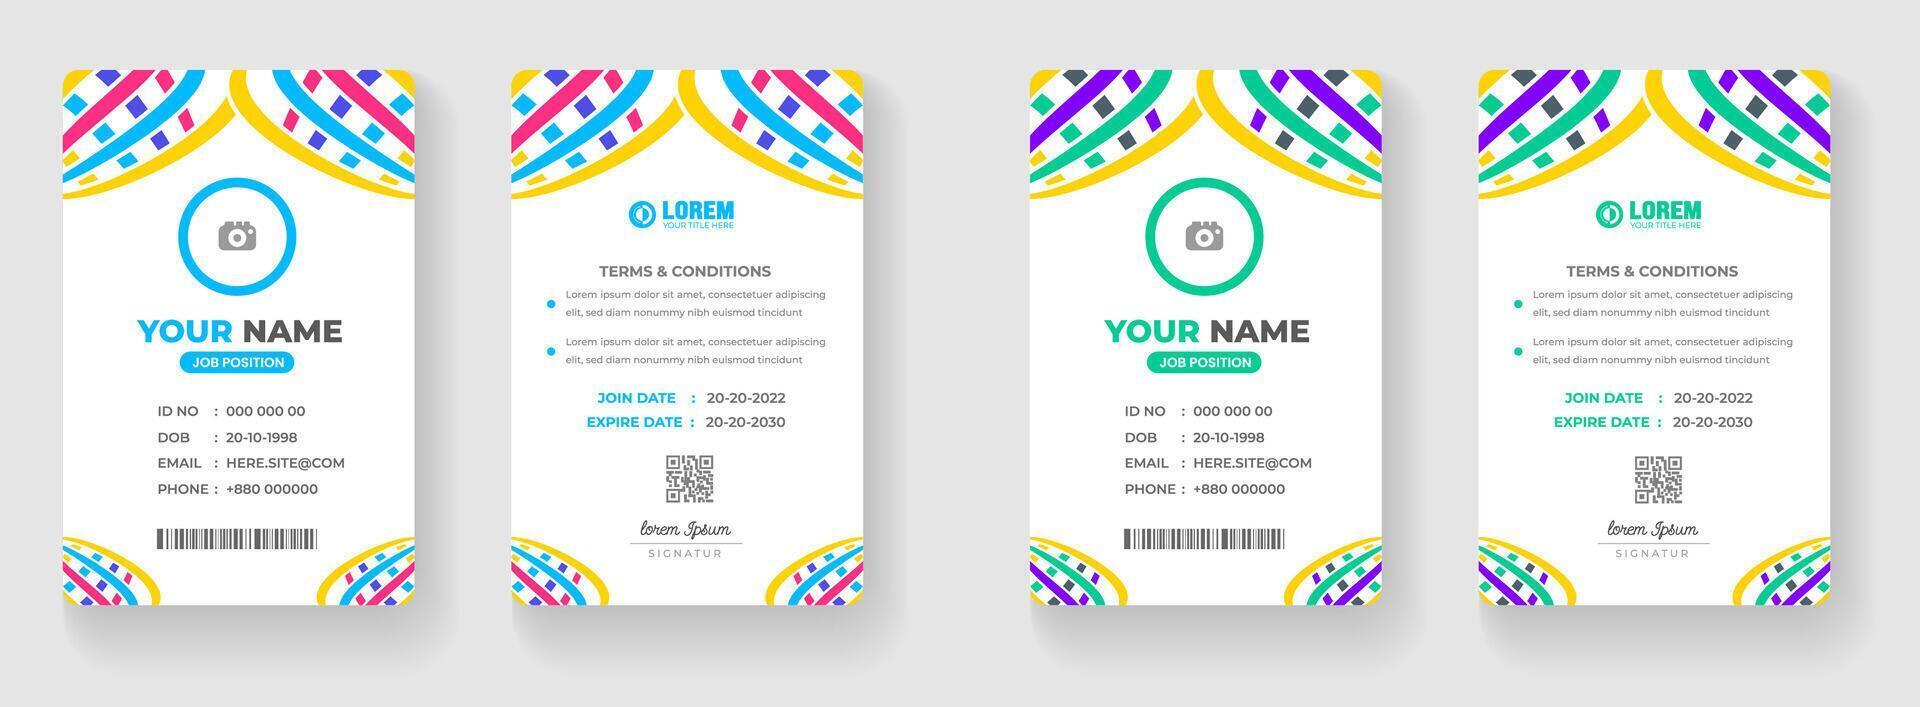 corporativo moderno oficina identidad tarjeta o elegante negocio empresa carné de identidad tarjeta diseño modelo. vector